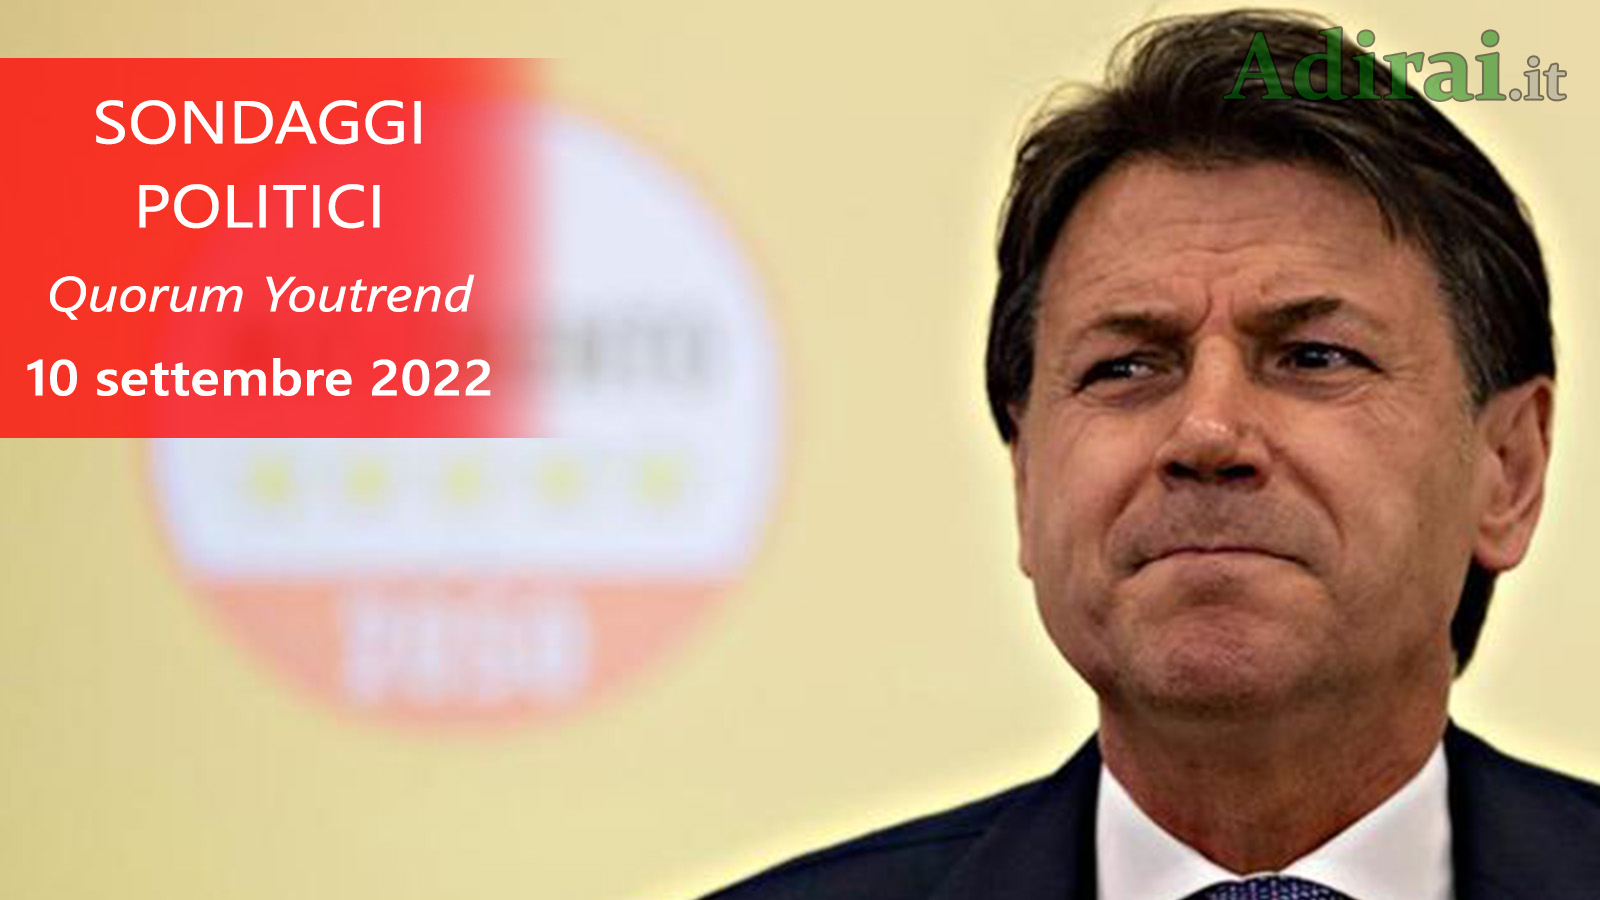 ultimi sondaggi politici 10 settembre 2022 quorum youtrend di tutti i partiti italiani